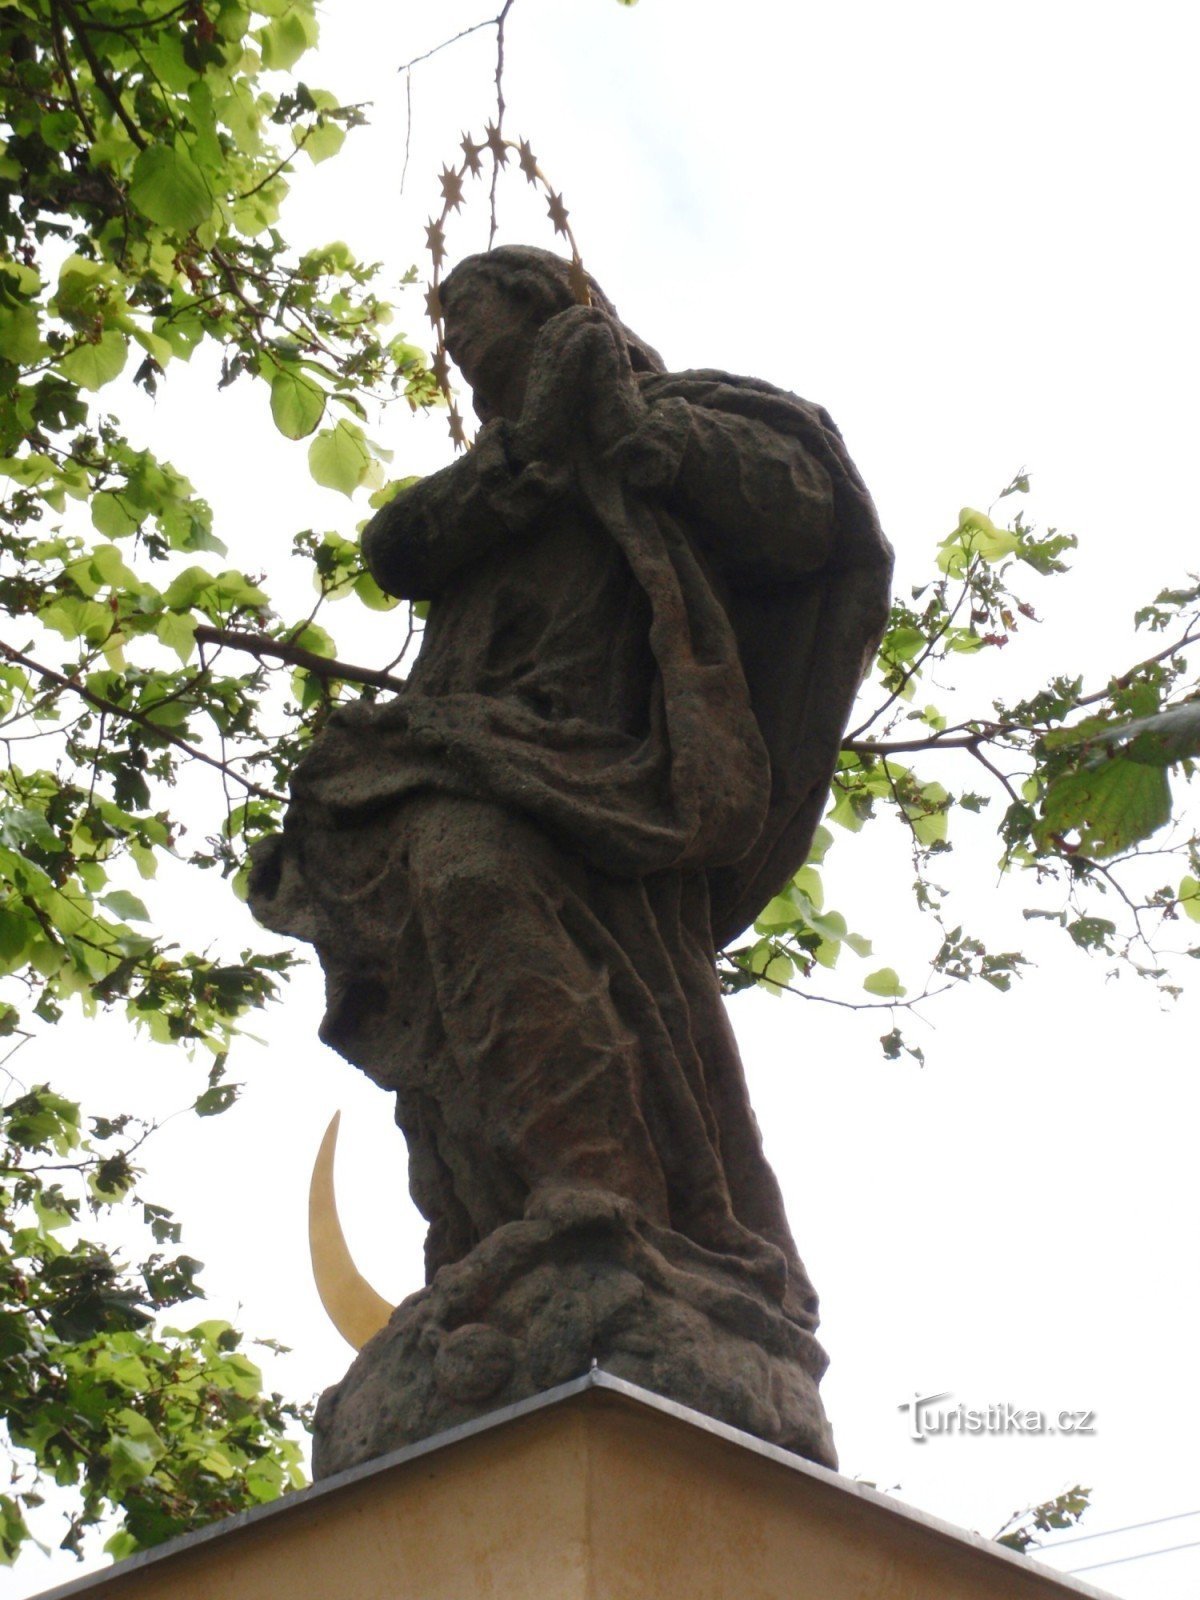 Непорочная статуя в Осовой Битышке